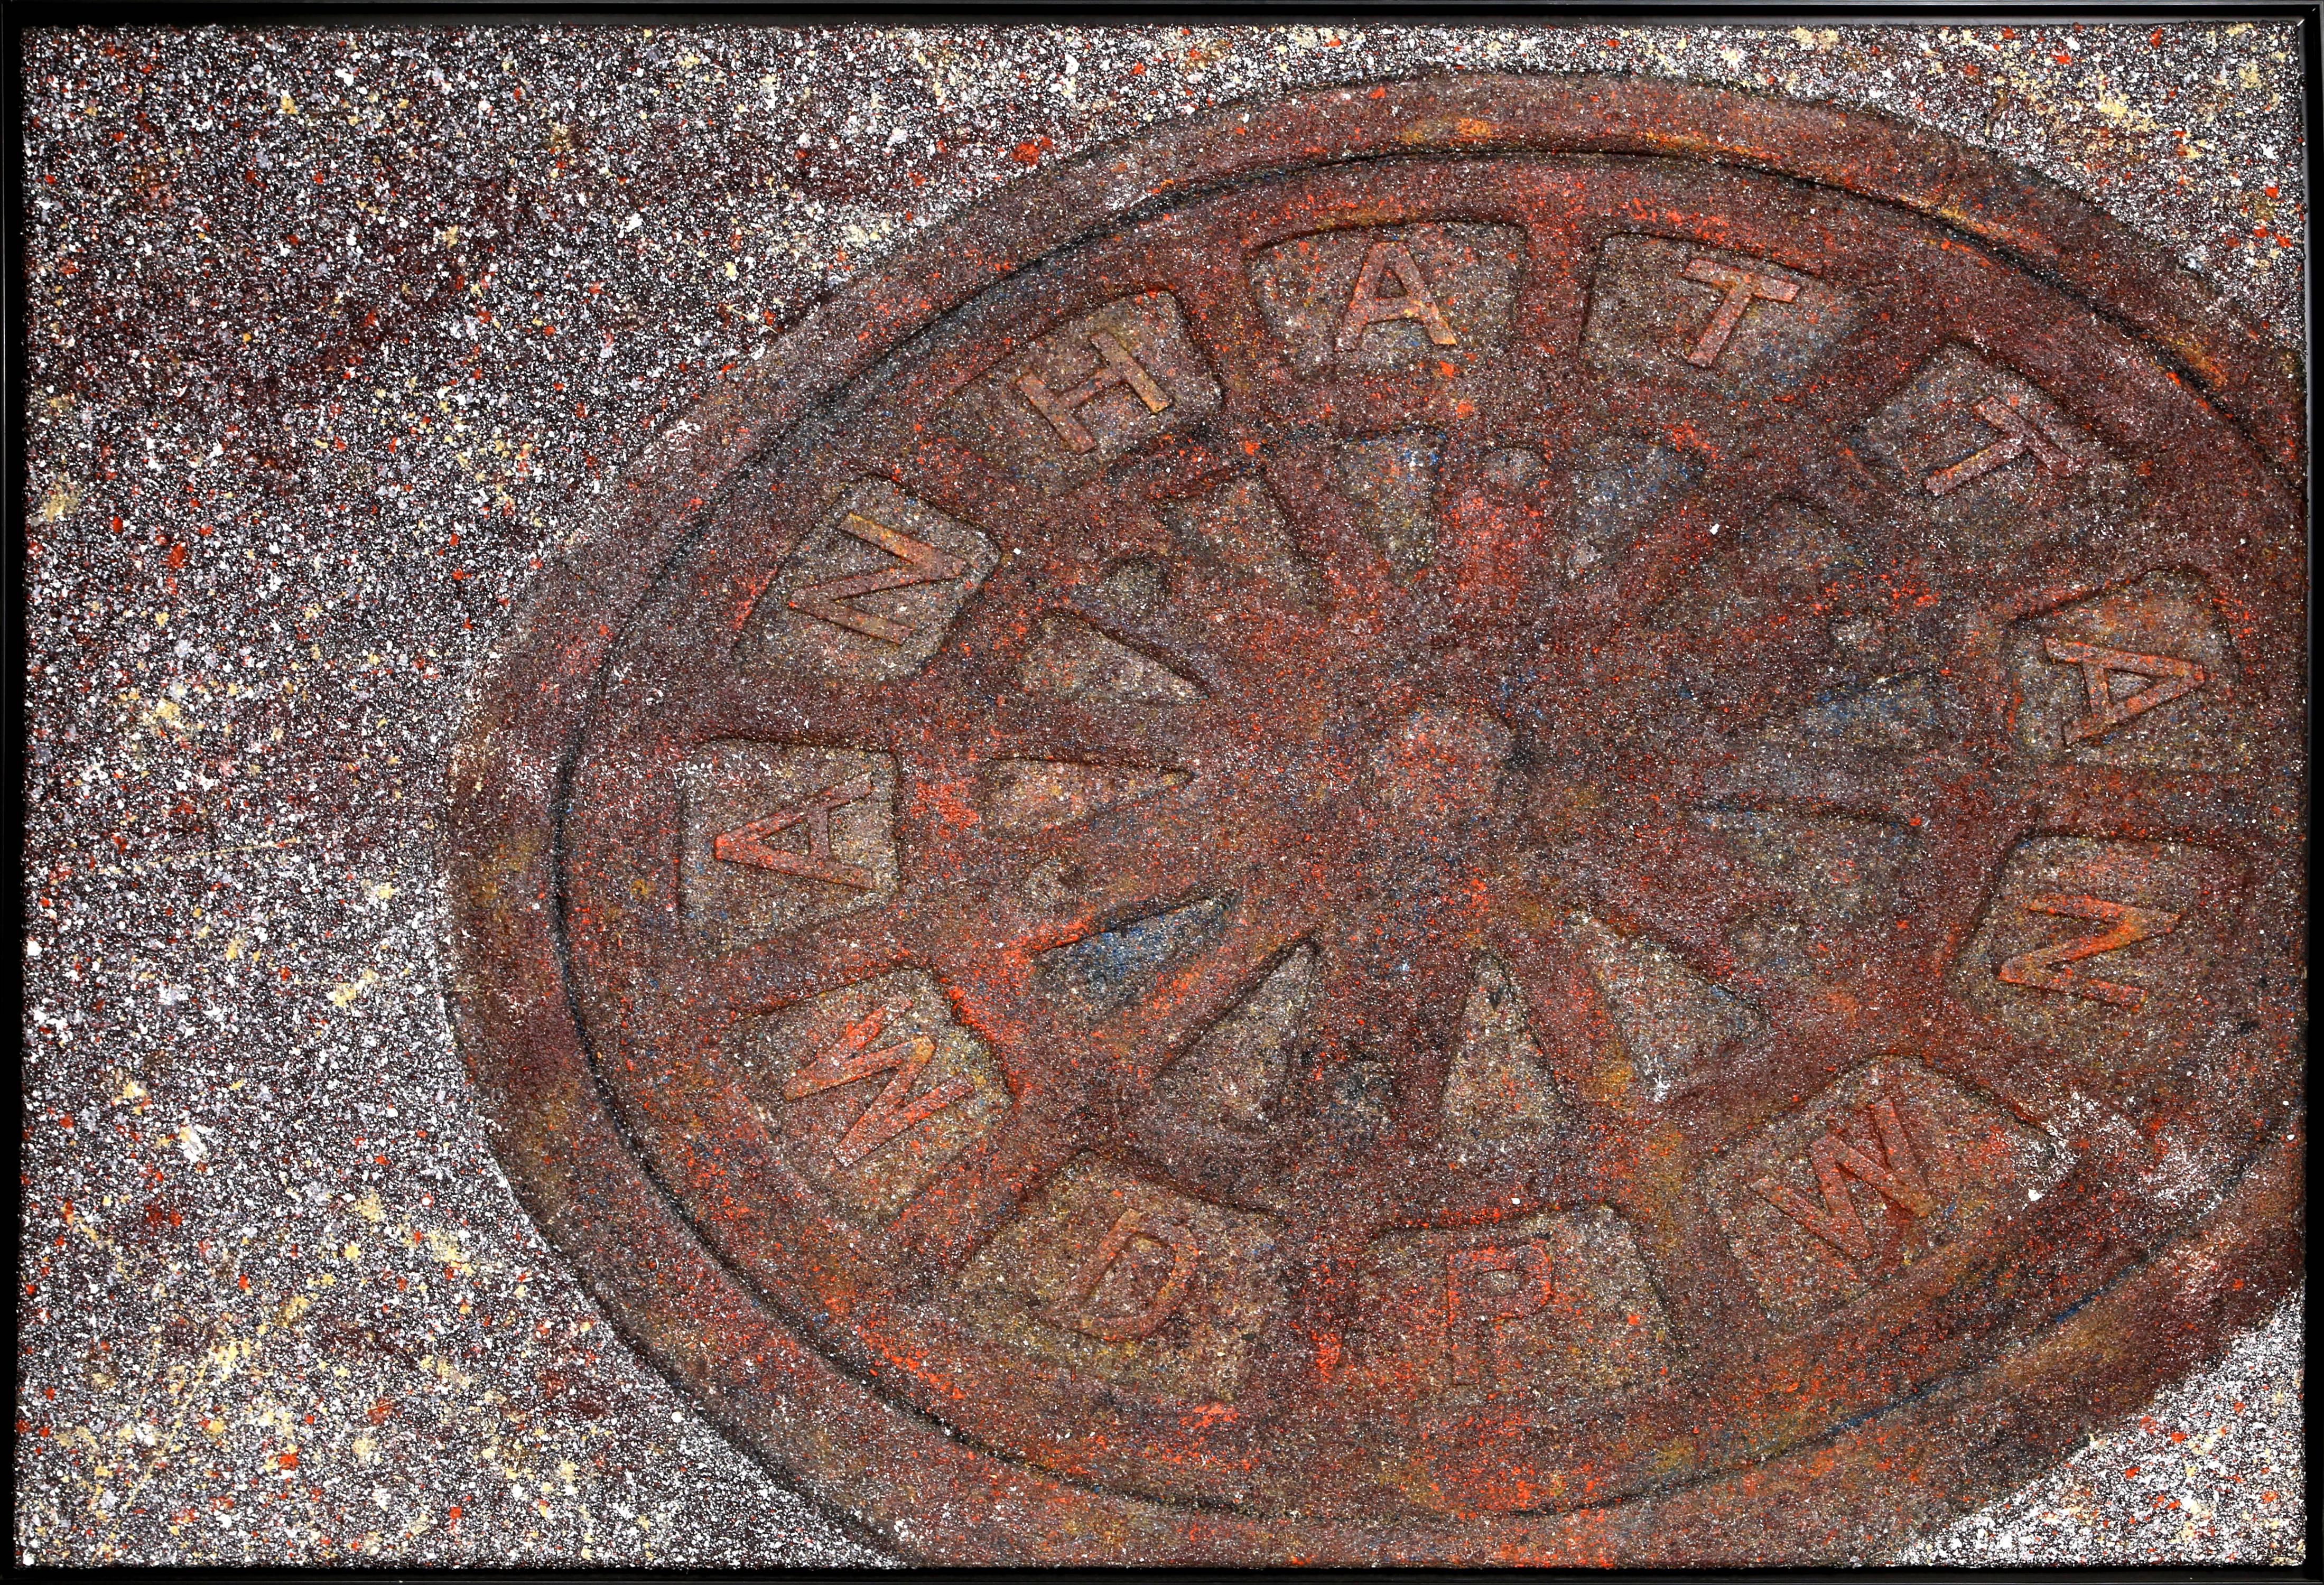 Manhole Cover (Manhattan DPW)